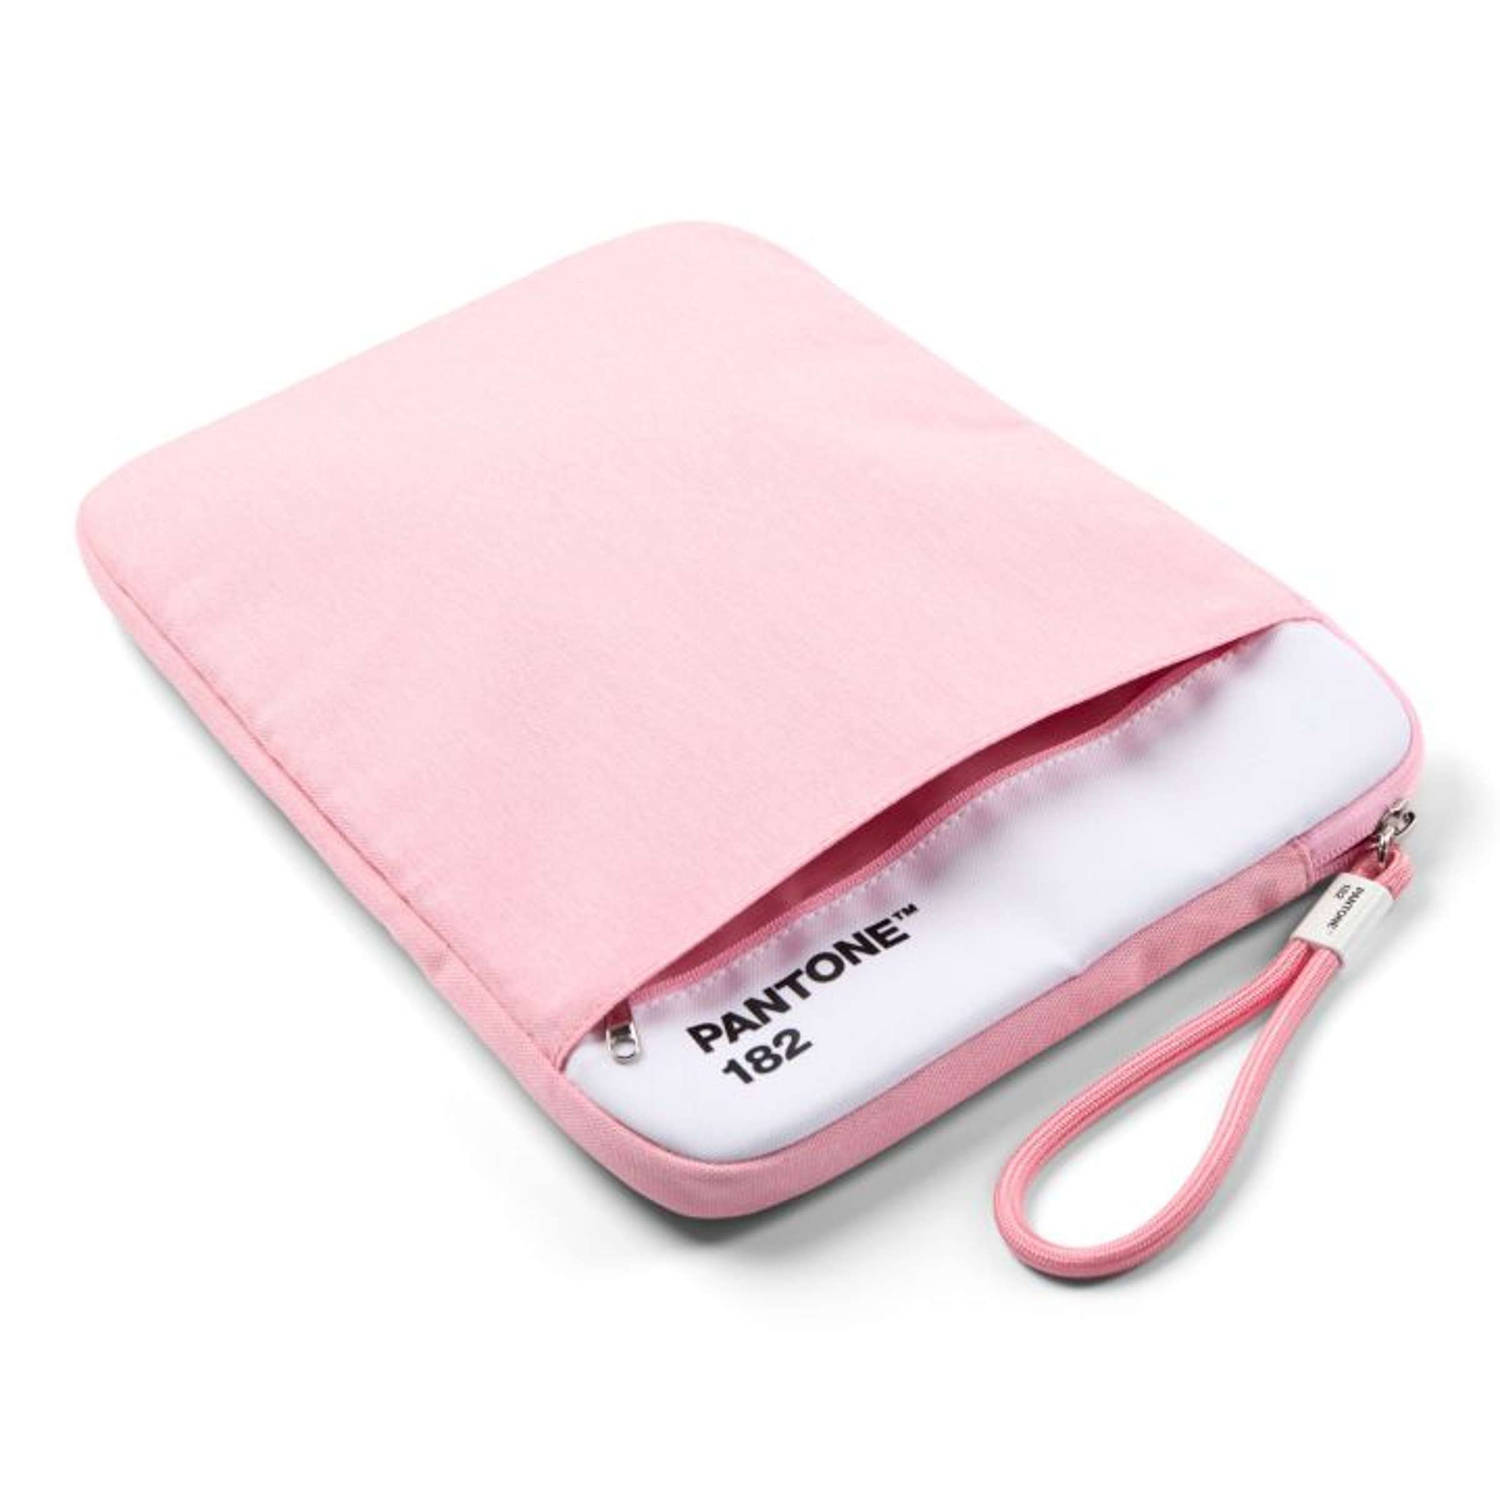 Copenhagen Design Beschermhoes voor Tablet 13 inch Light Pink 182 Polyester Roze